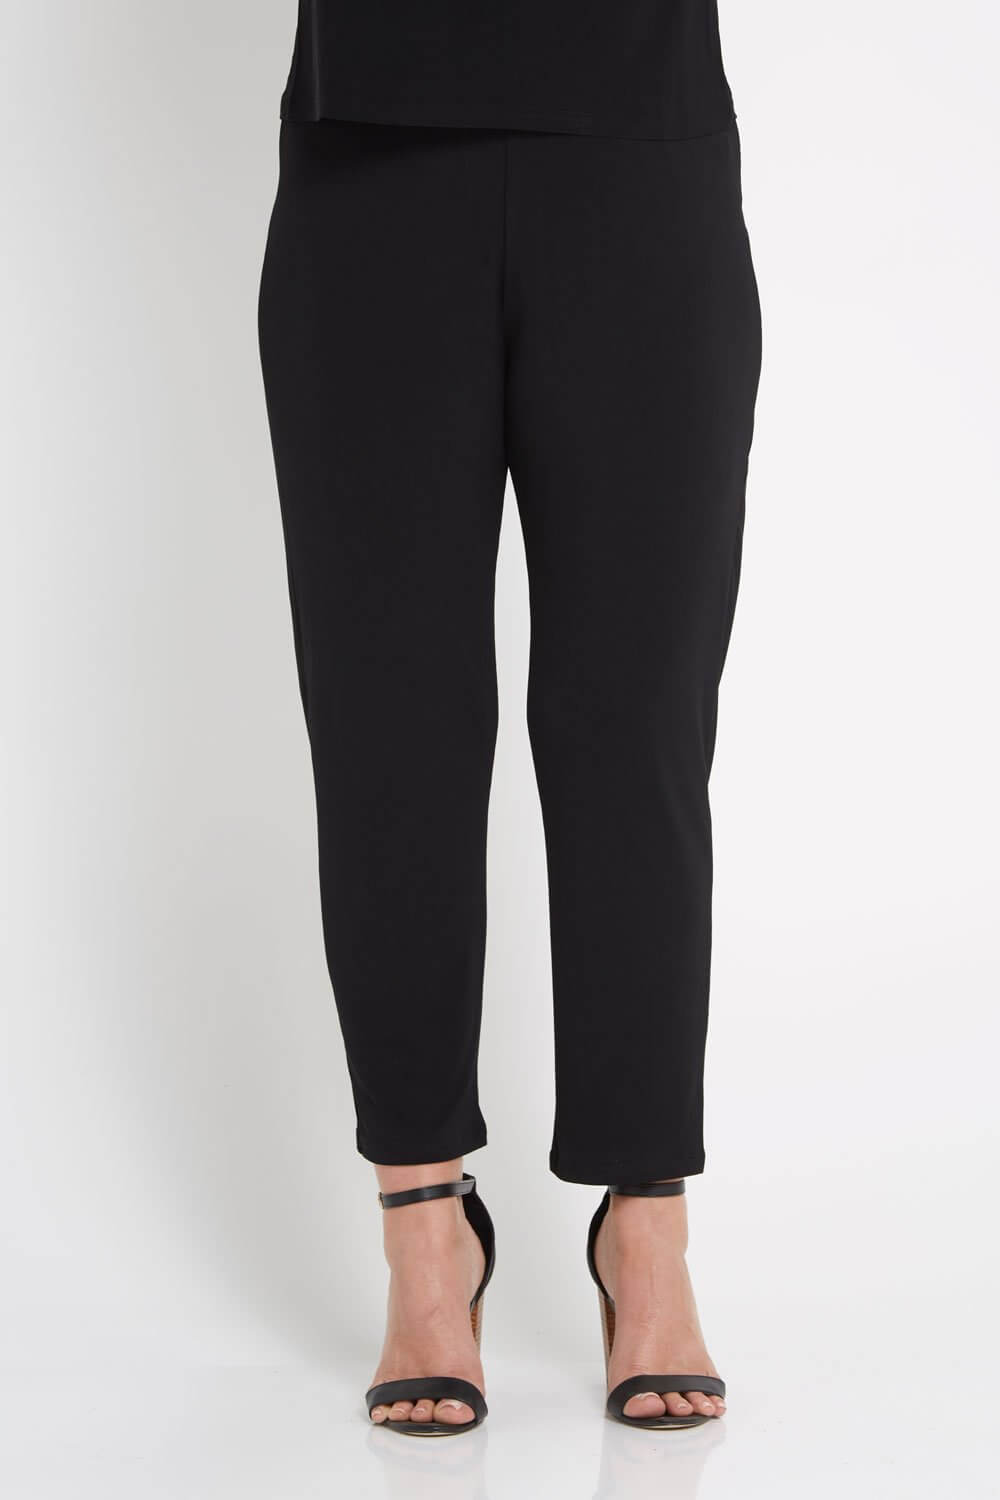 TULO Fashion, Gianna Petite Pants - Black